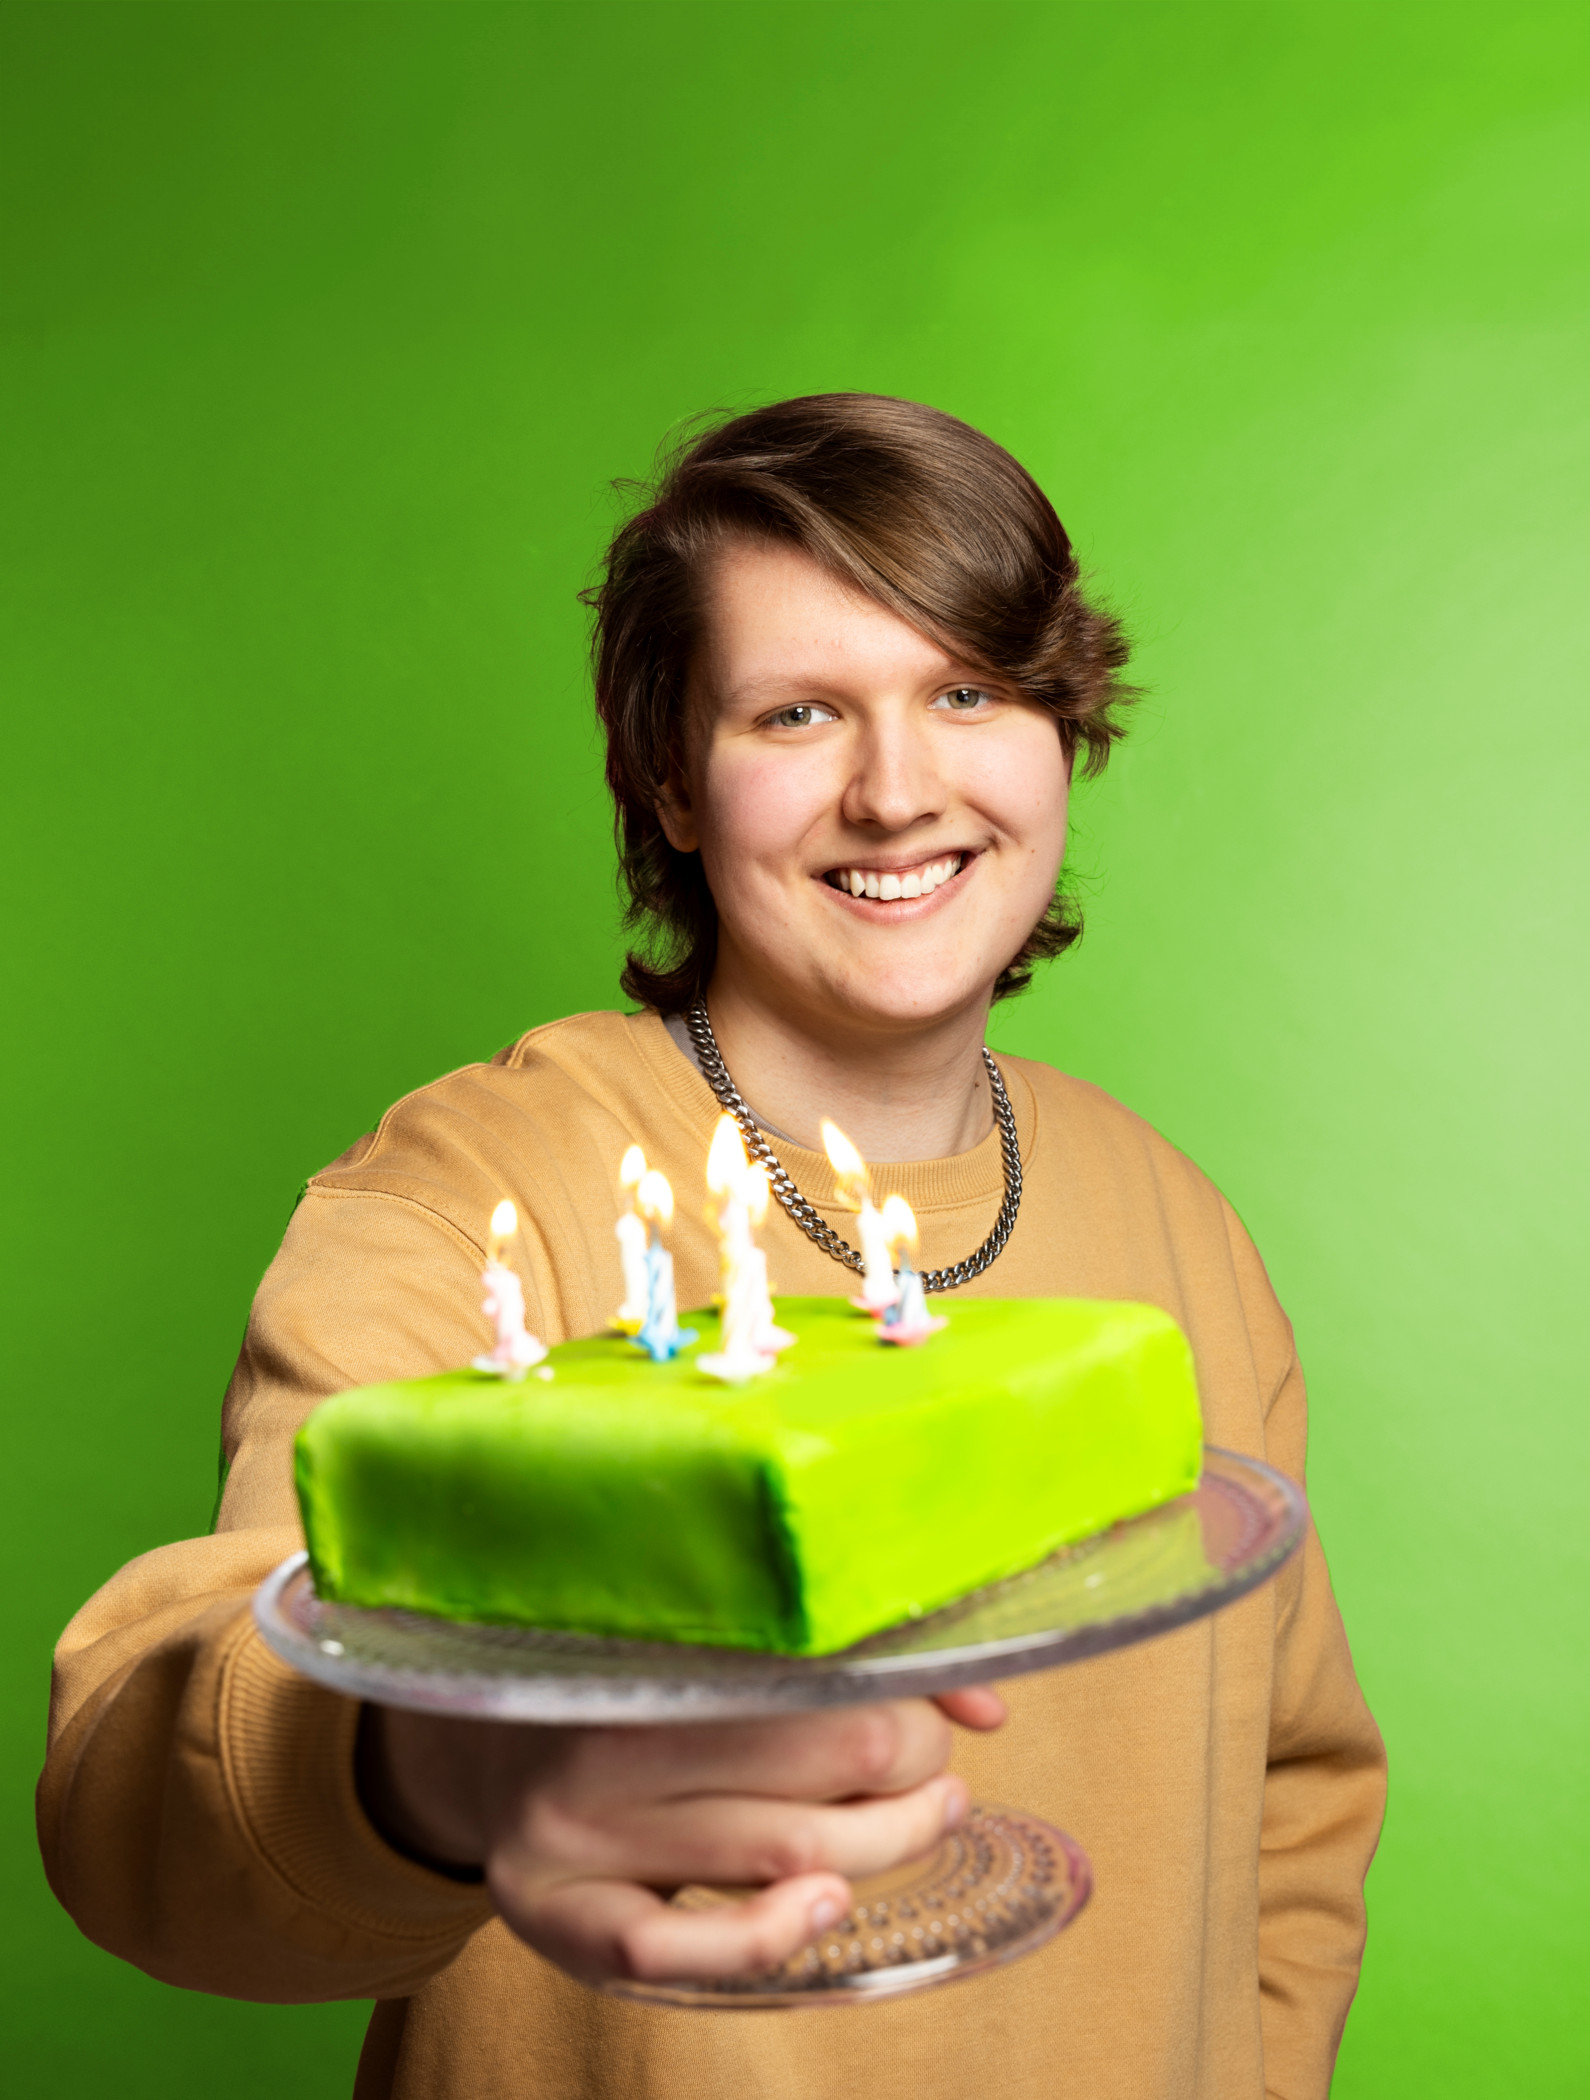 Kakkuh näyttää hymyillen kameralle vihreää kakkua, jossa palaa kahdeksan kynttilää.